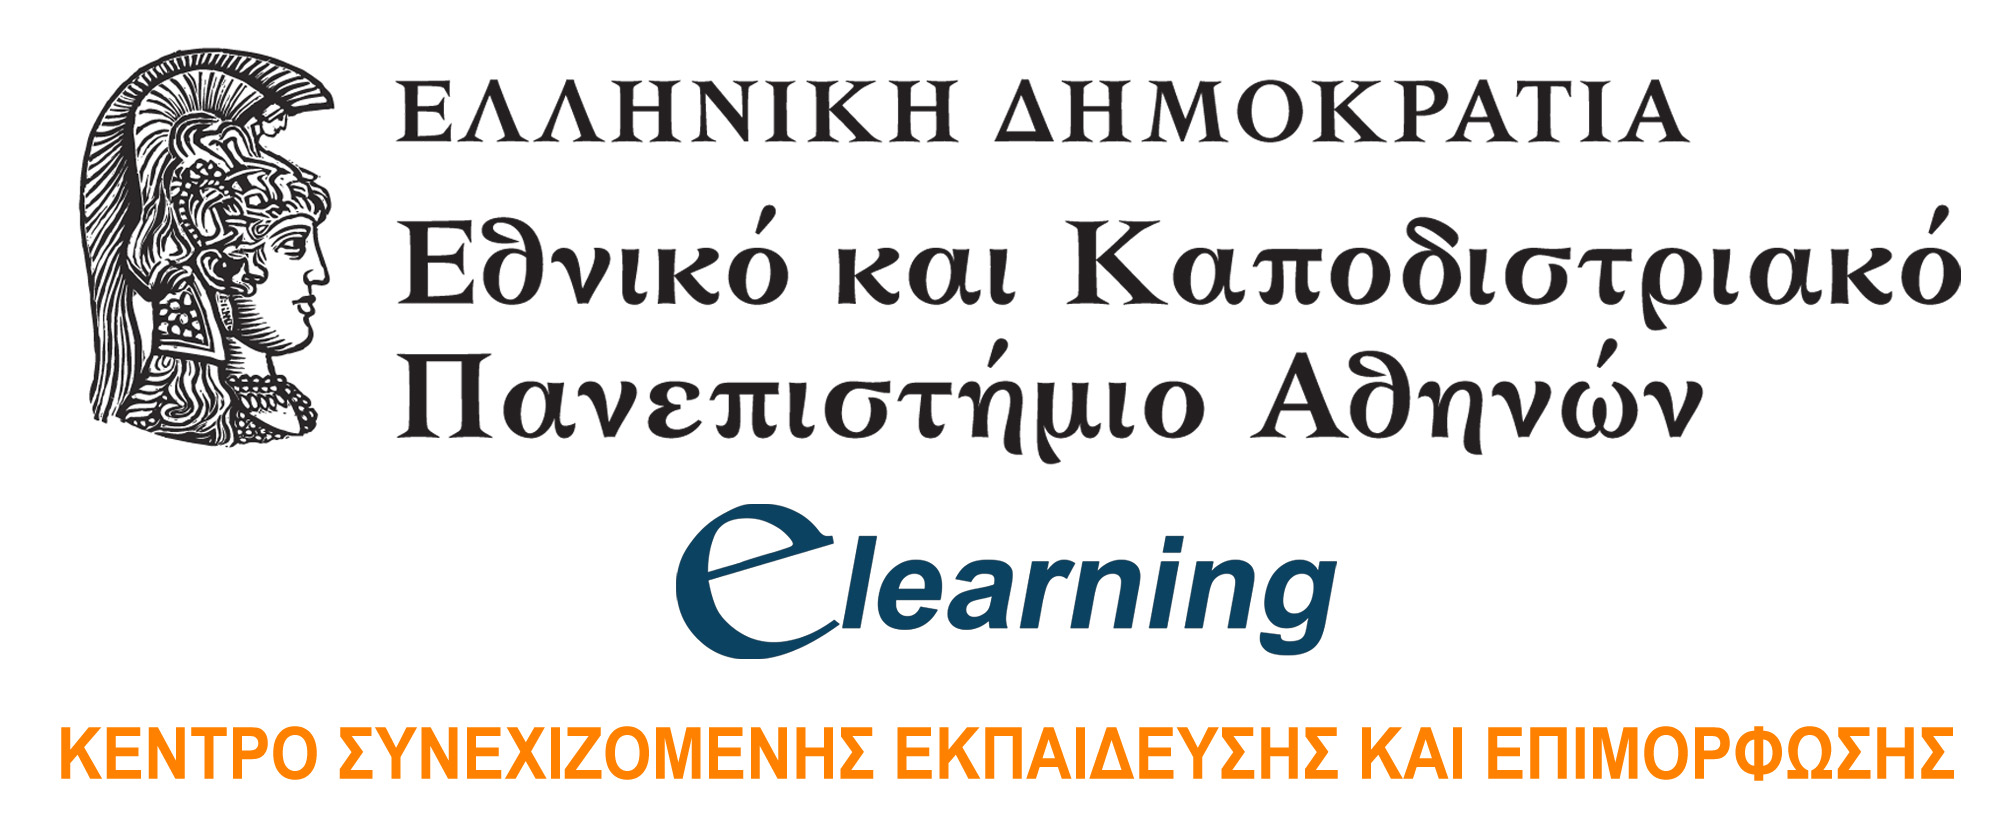 Δωρεάν  e-επιμόρφωση 100 ανέργων από το E-Learning του Πανεπιστημίου Αθηνών